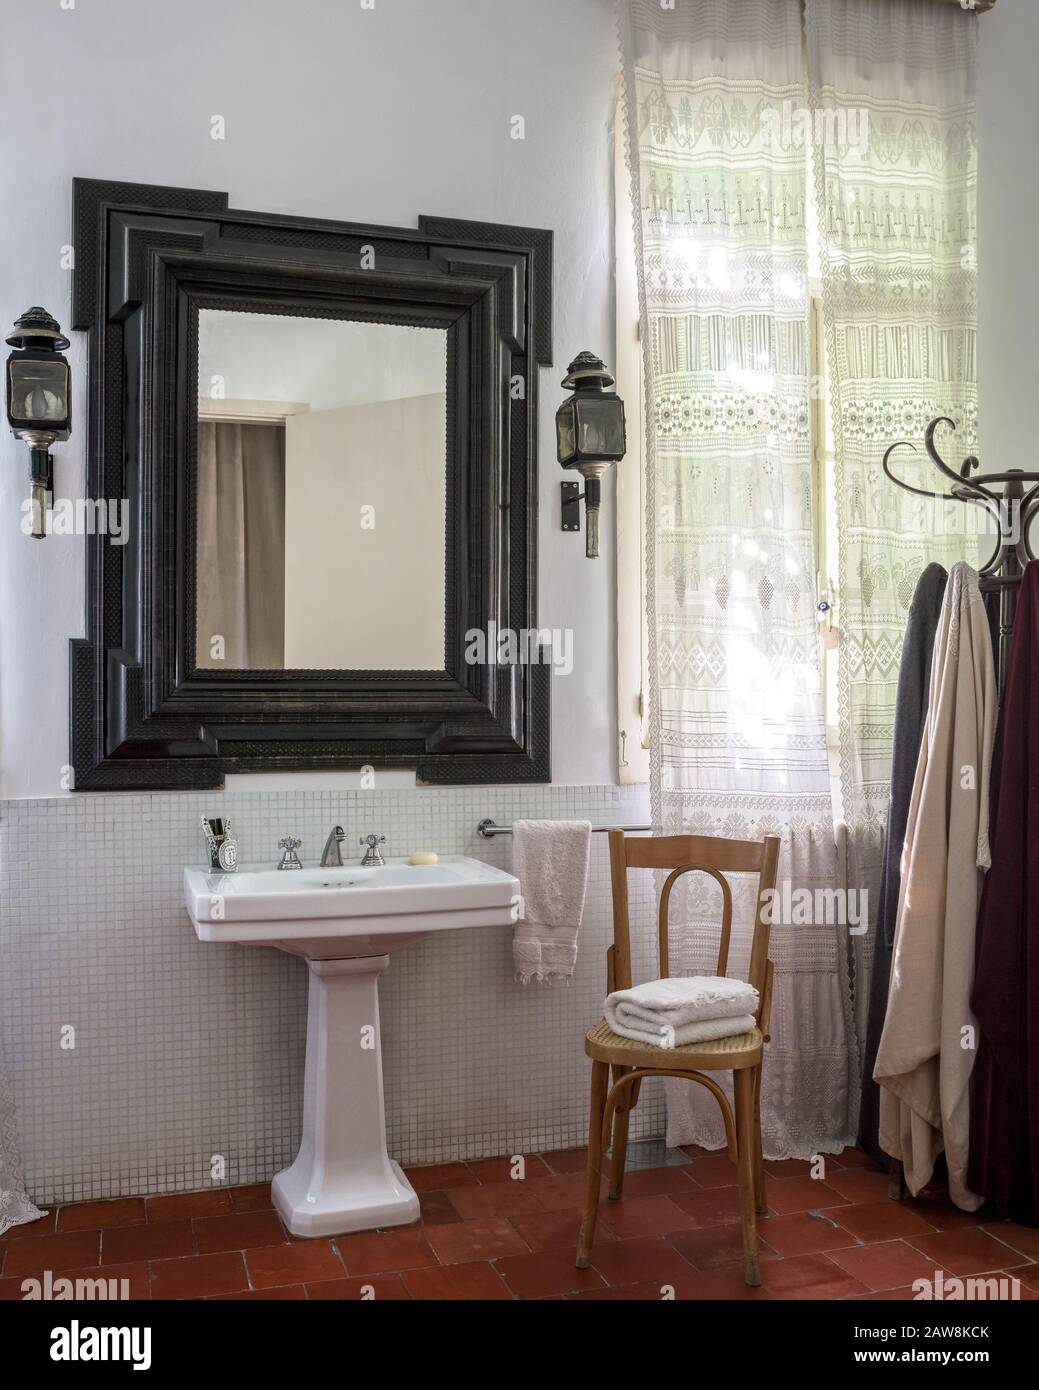 Spiegel über Waschbecken im Landhausstil Badezimmer Stockfoto